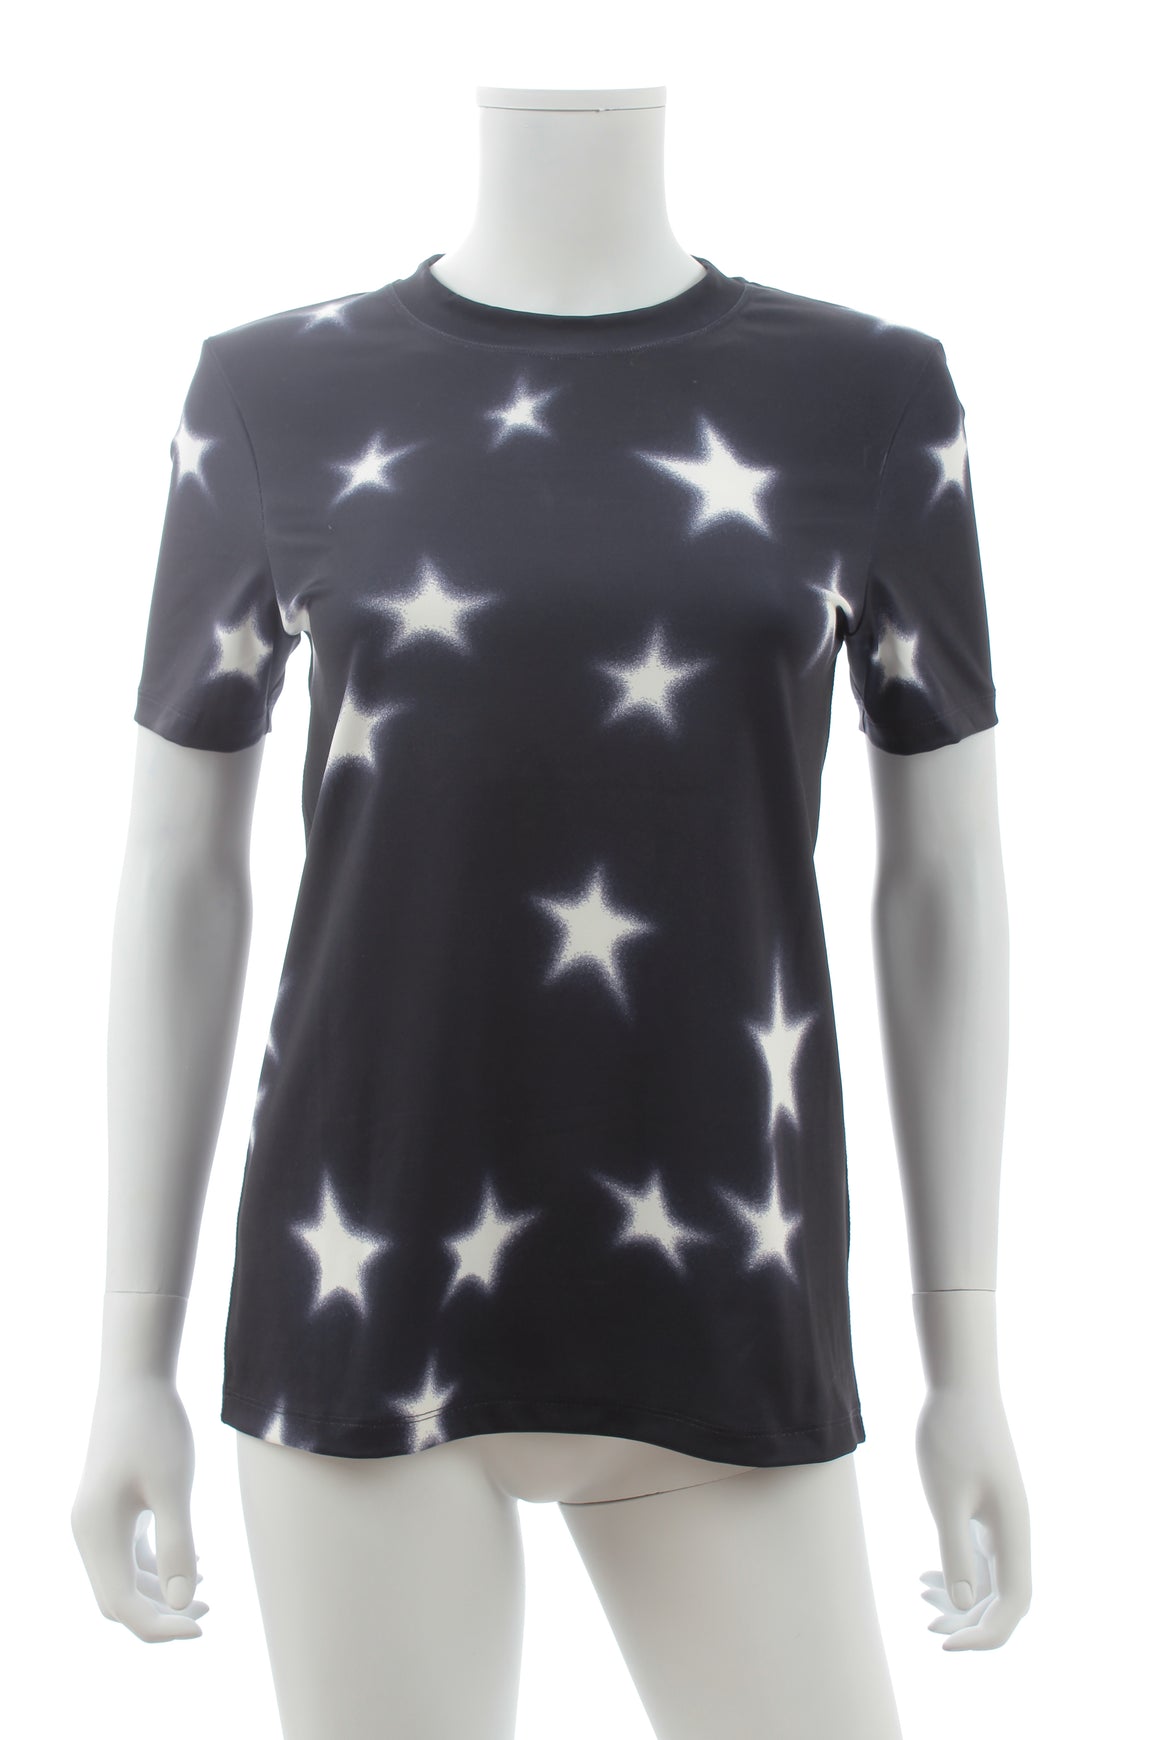 Acne Studios Blå Konst Meow Star T-Shirt